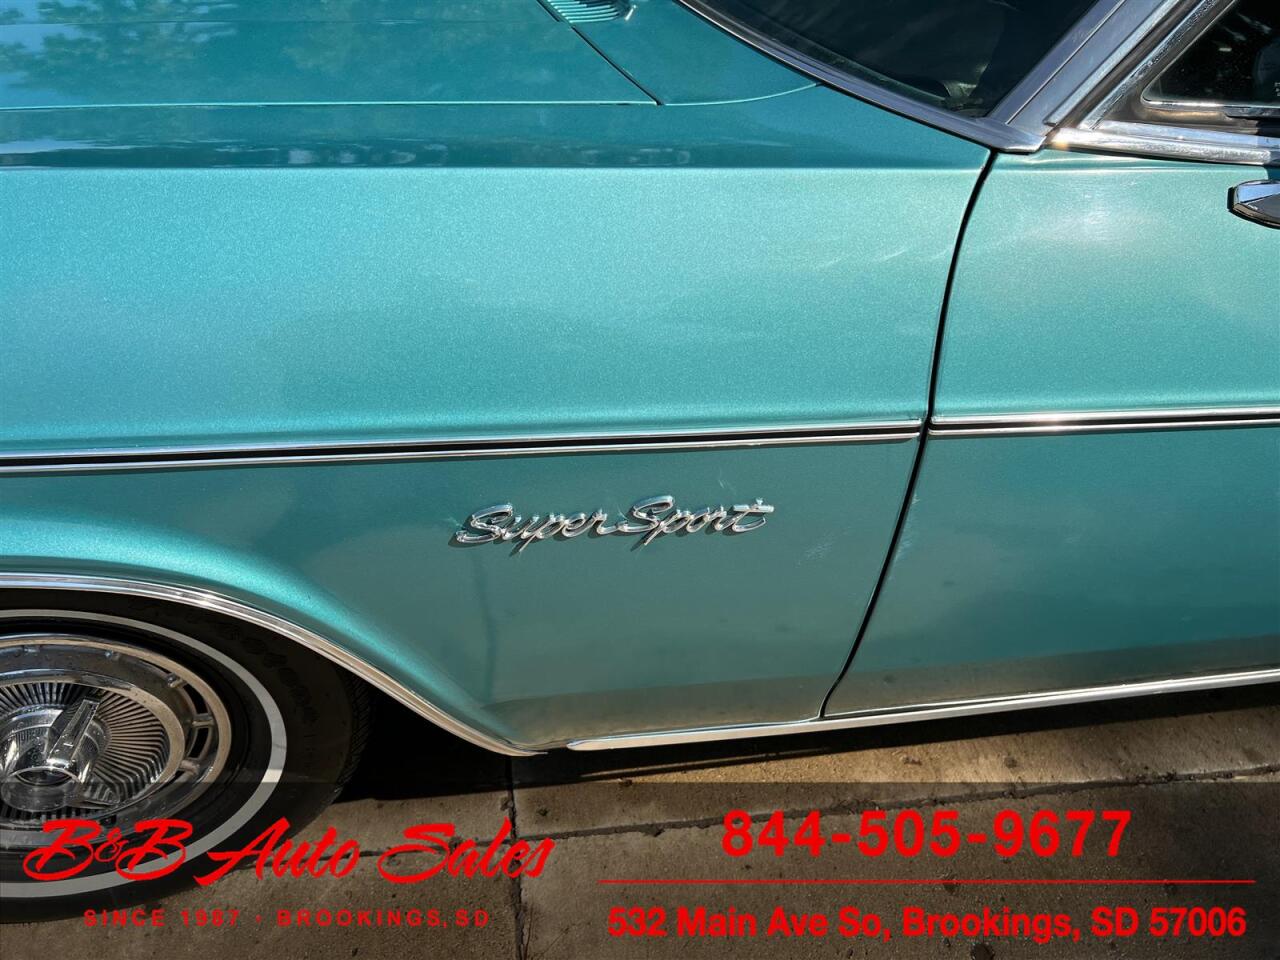 1966 Chevrolet Impala 57